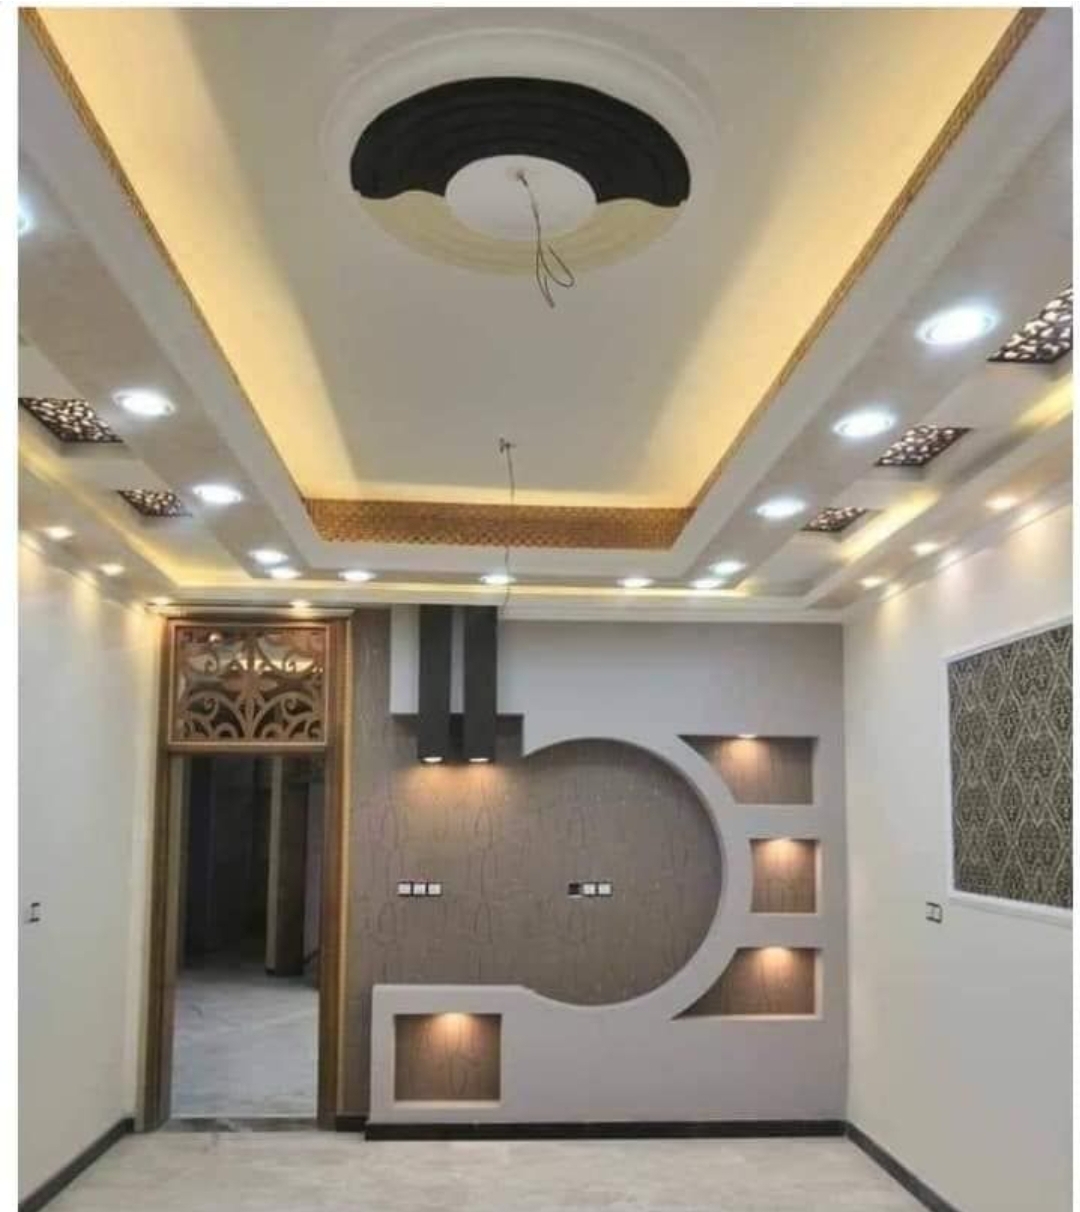 False ceiling # gypsum bod ceiling design # ceiling design # livingroom ceiling design # 